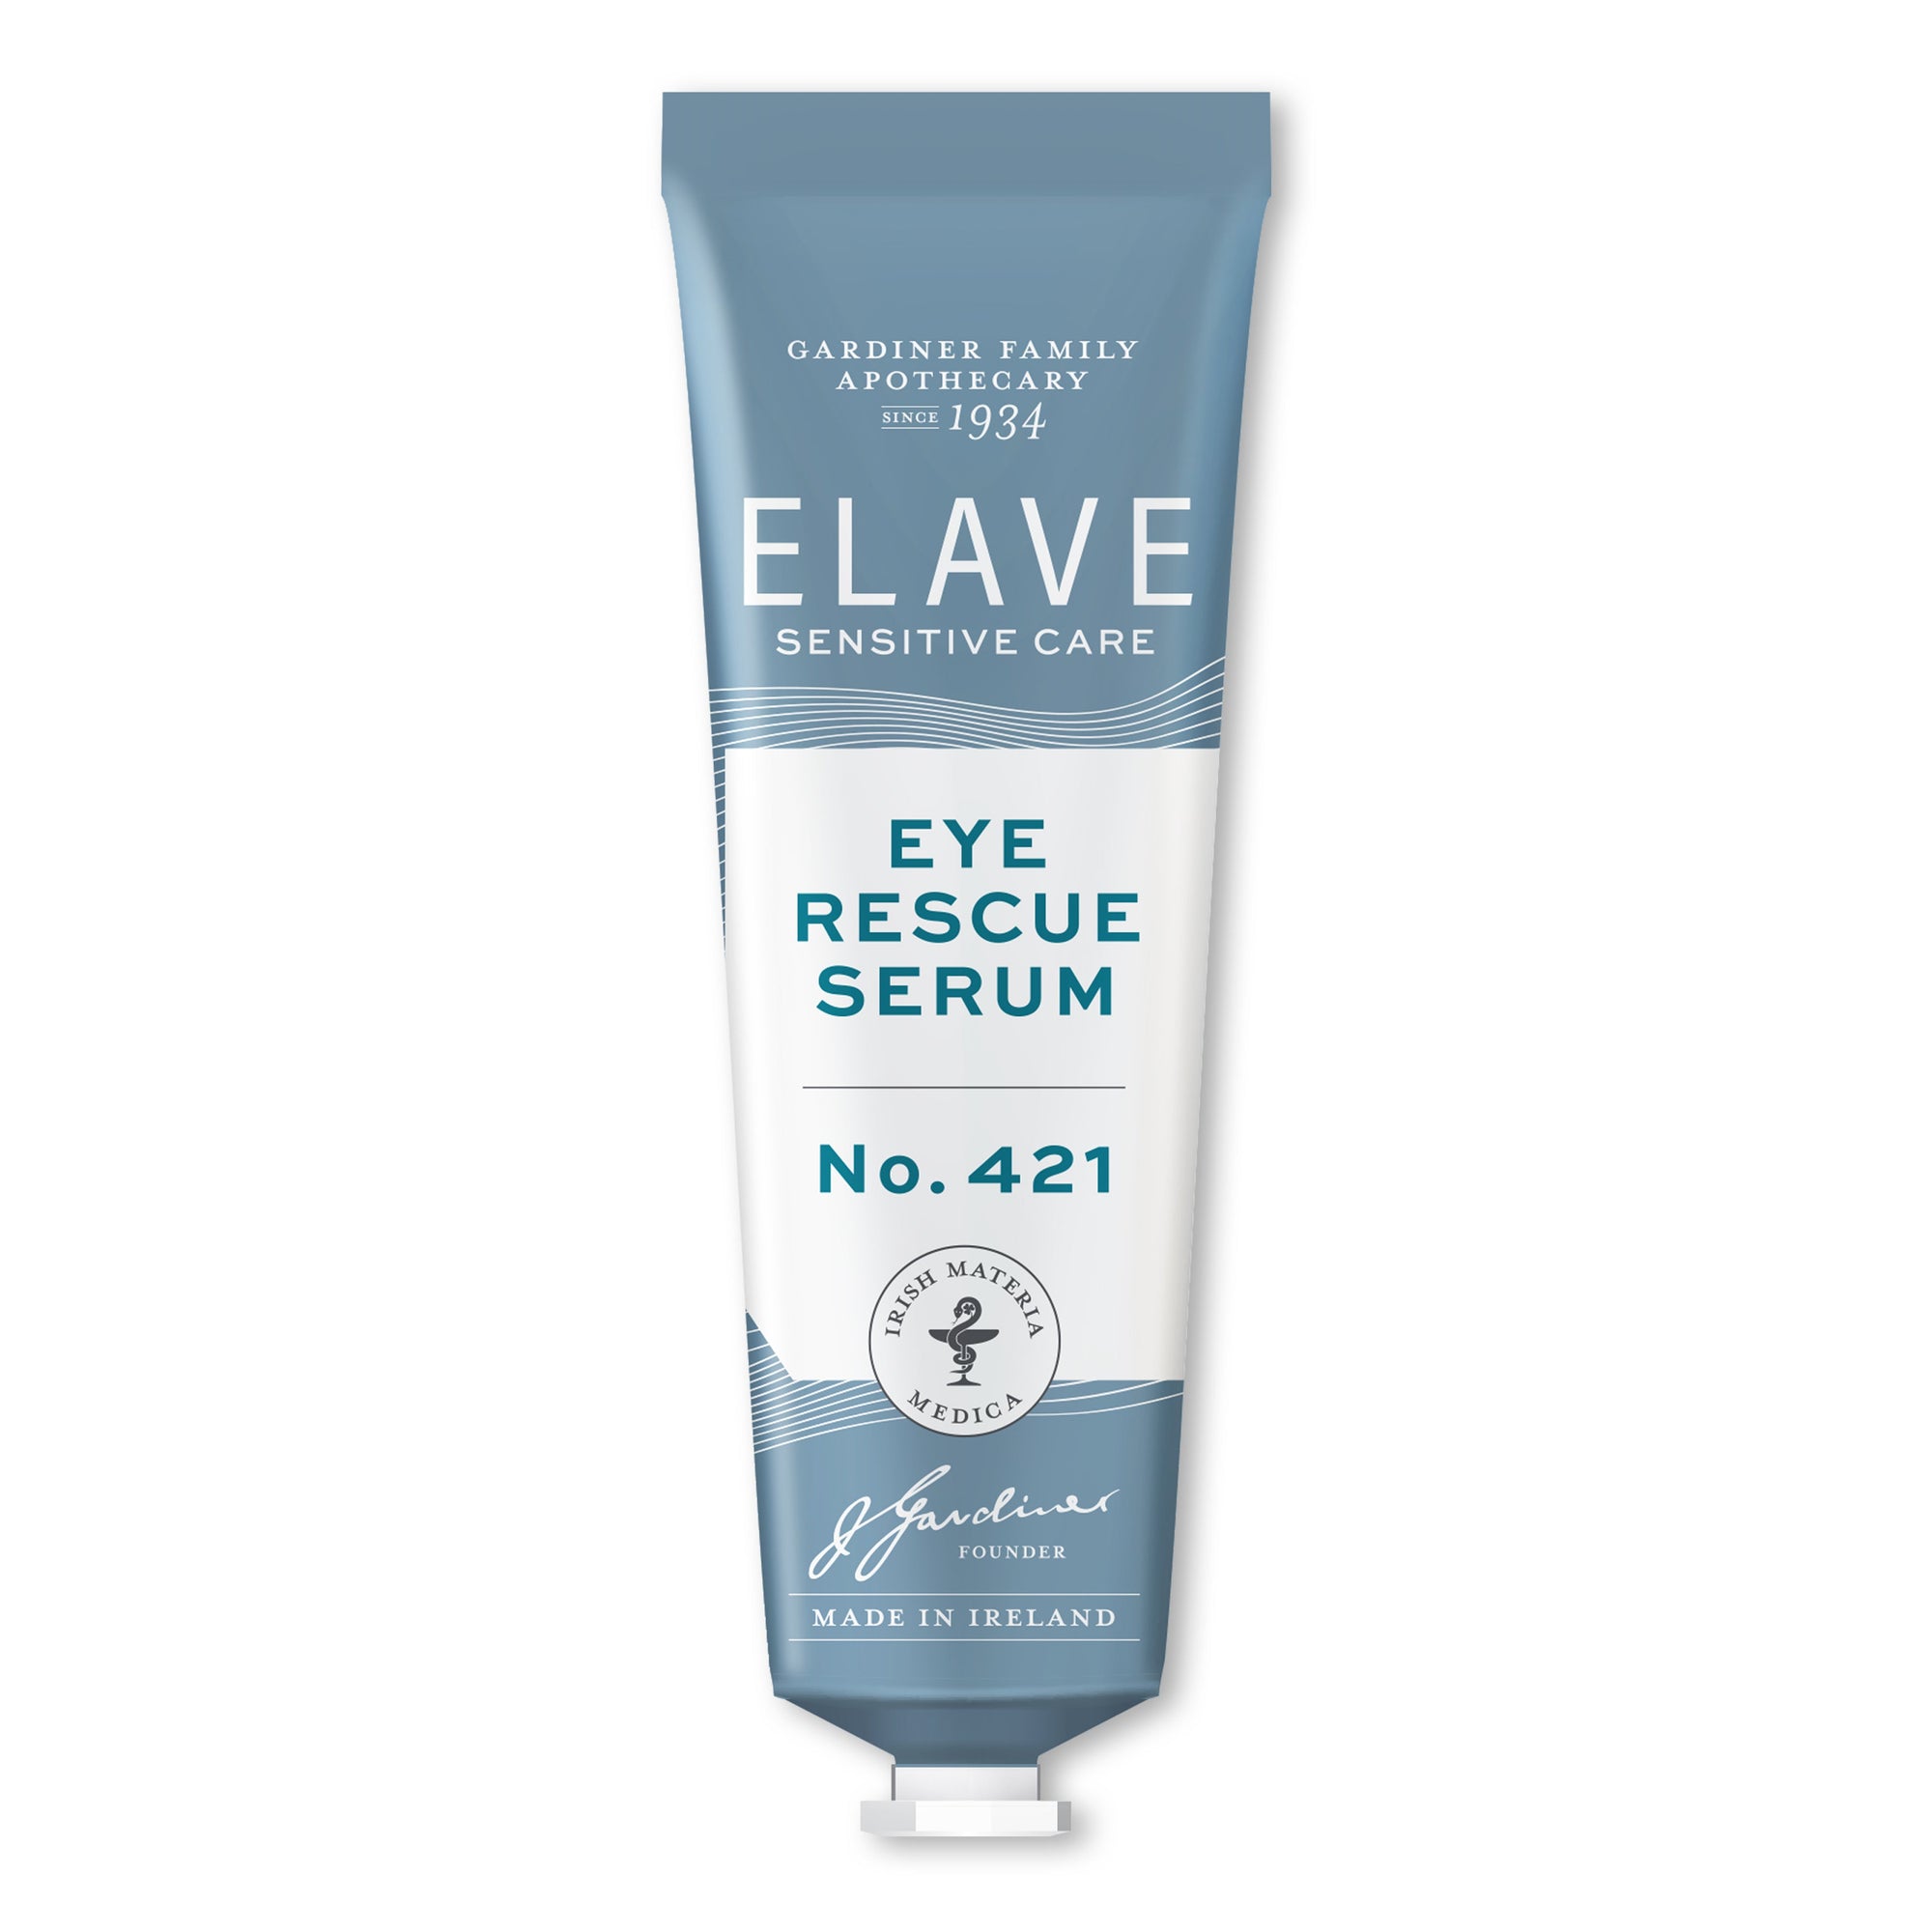 Elave 眼部修復精華 15毫升 (No.421) / Elave Eye Rescue Serum No.421 15ml